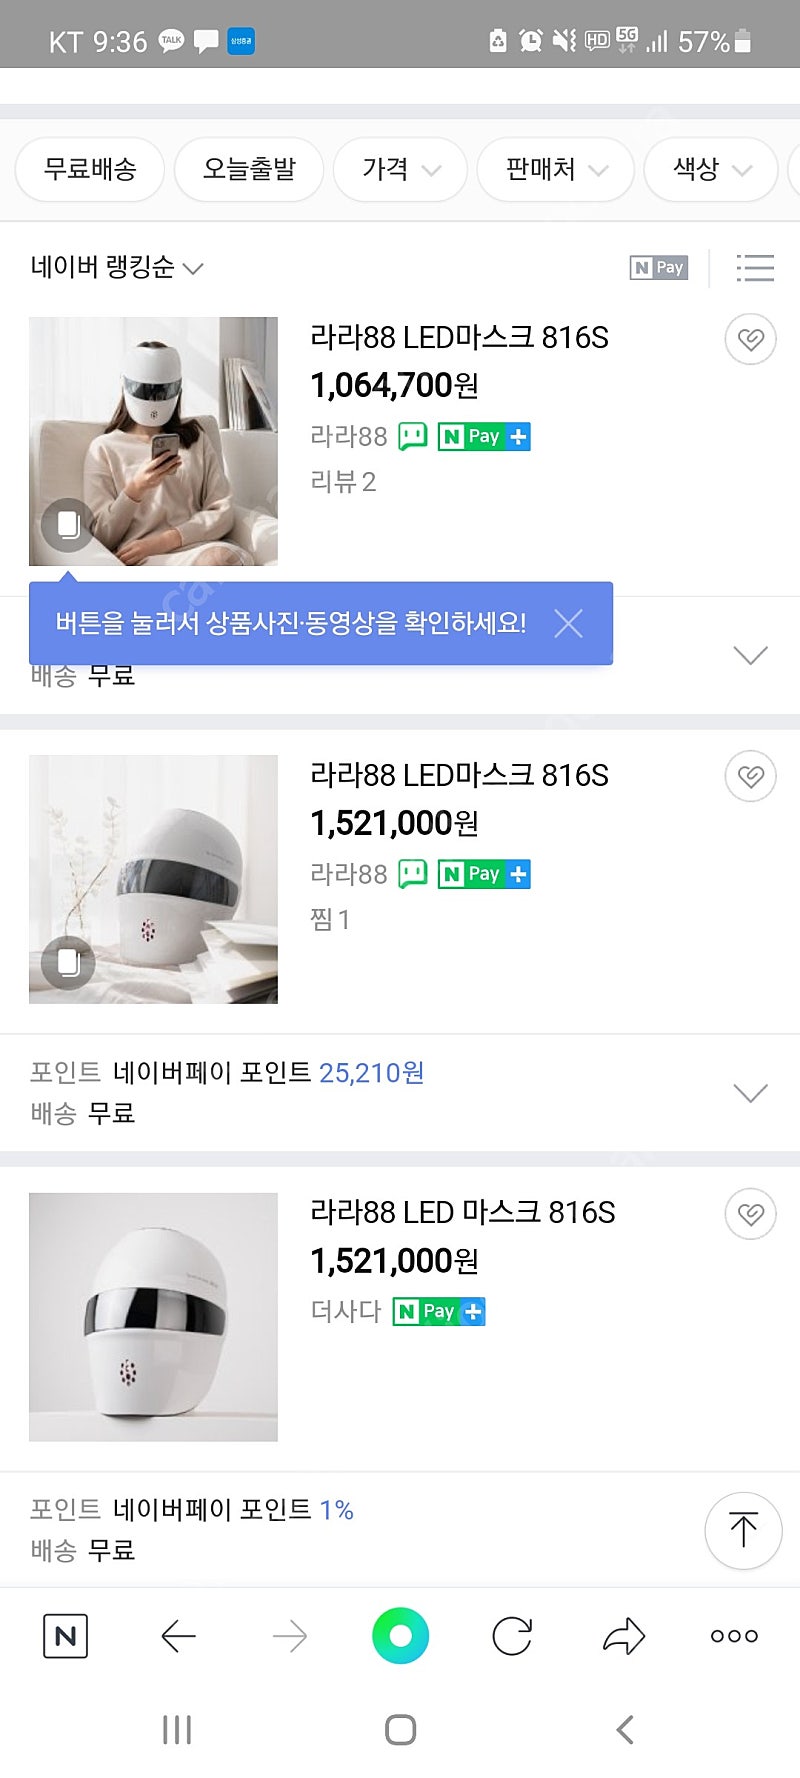 라라88 LED마스크 816S 새상품 판매